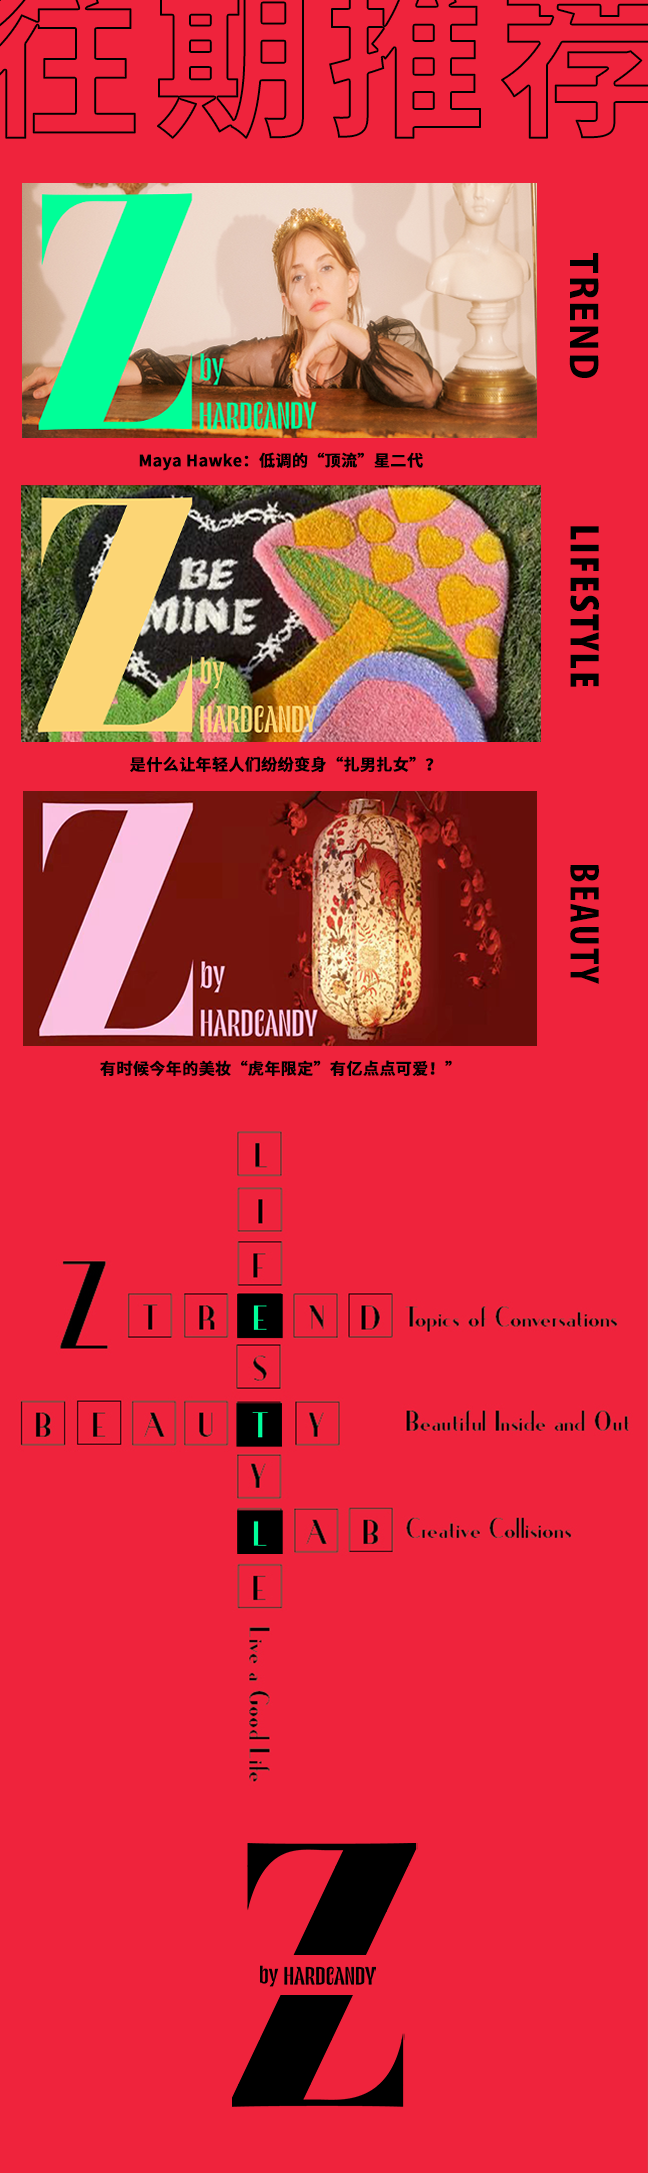 ZLabX时尚文化馆｜直播回顾：“新潮”又“传统”的中国文化